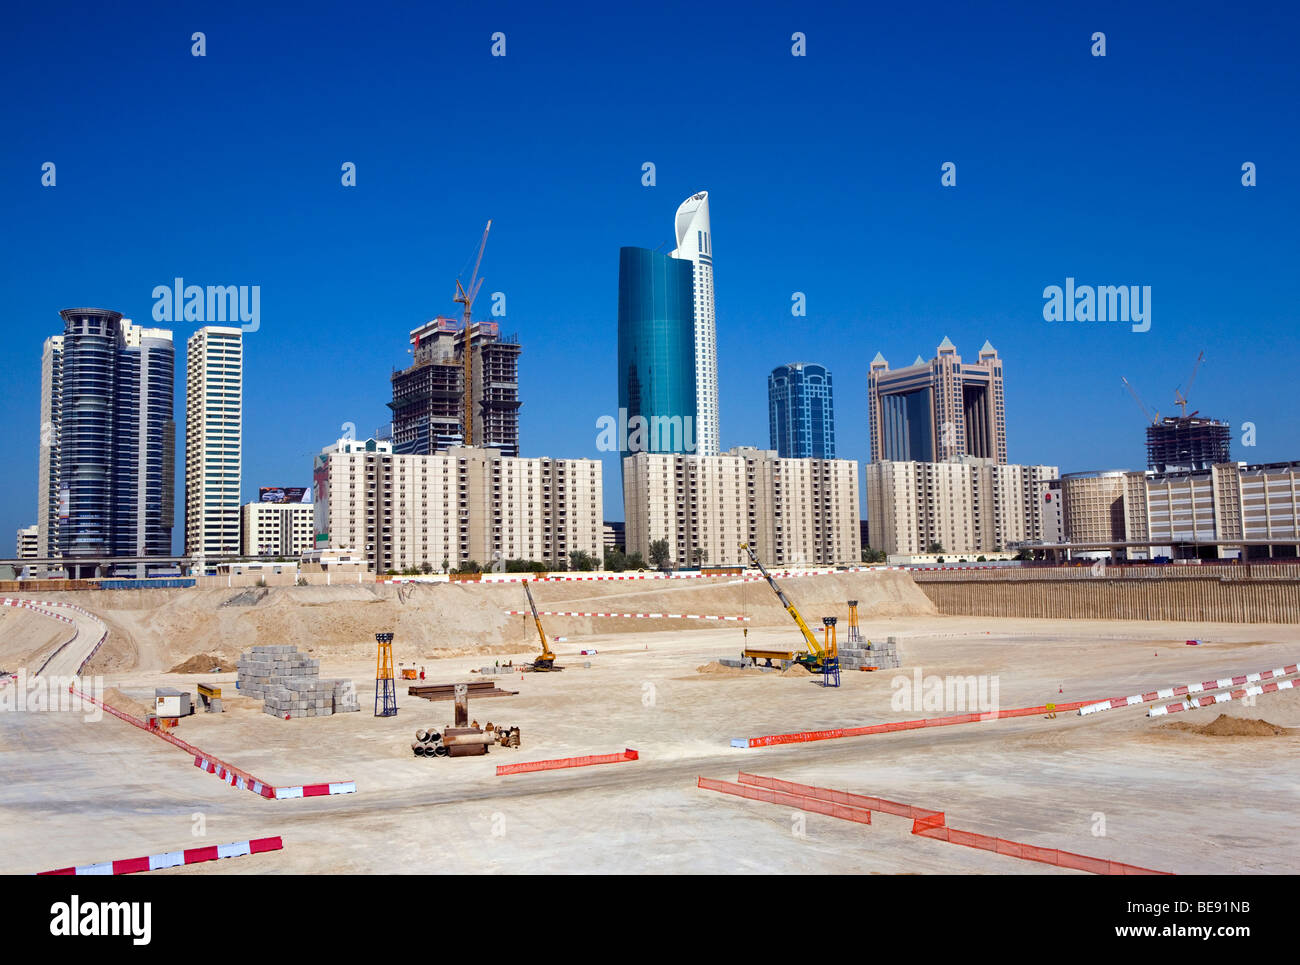 Construction site. United Arab Emirates, Dubai, Sheikh Zayed Road. Stock Photo